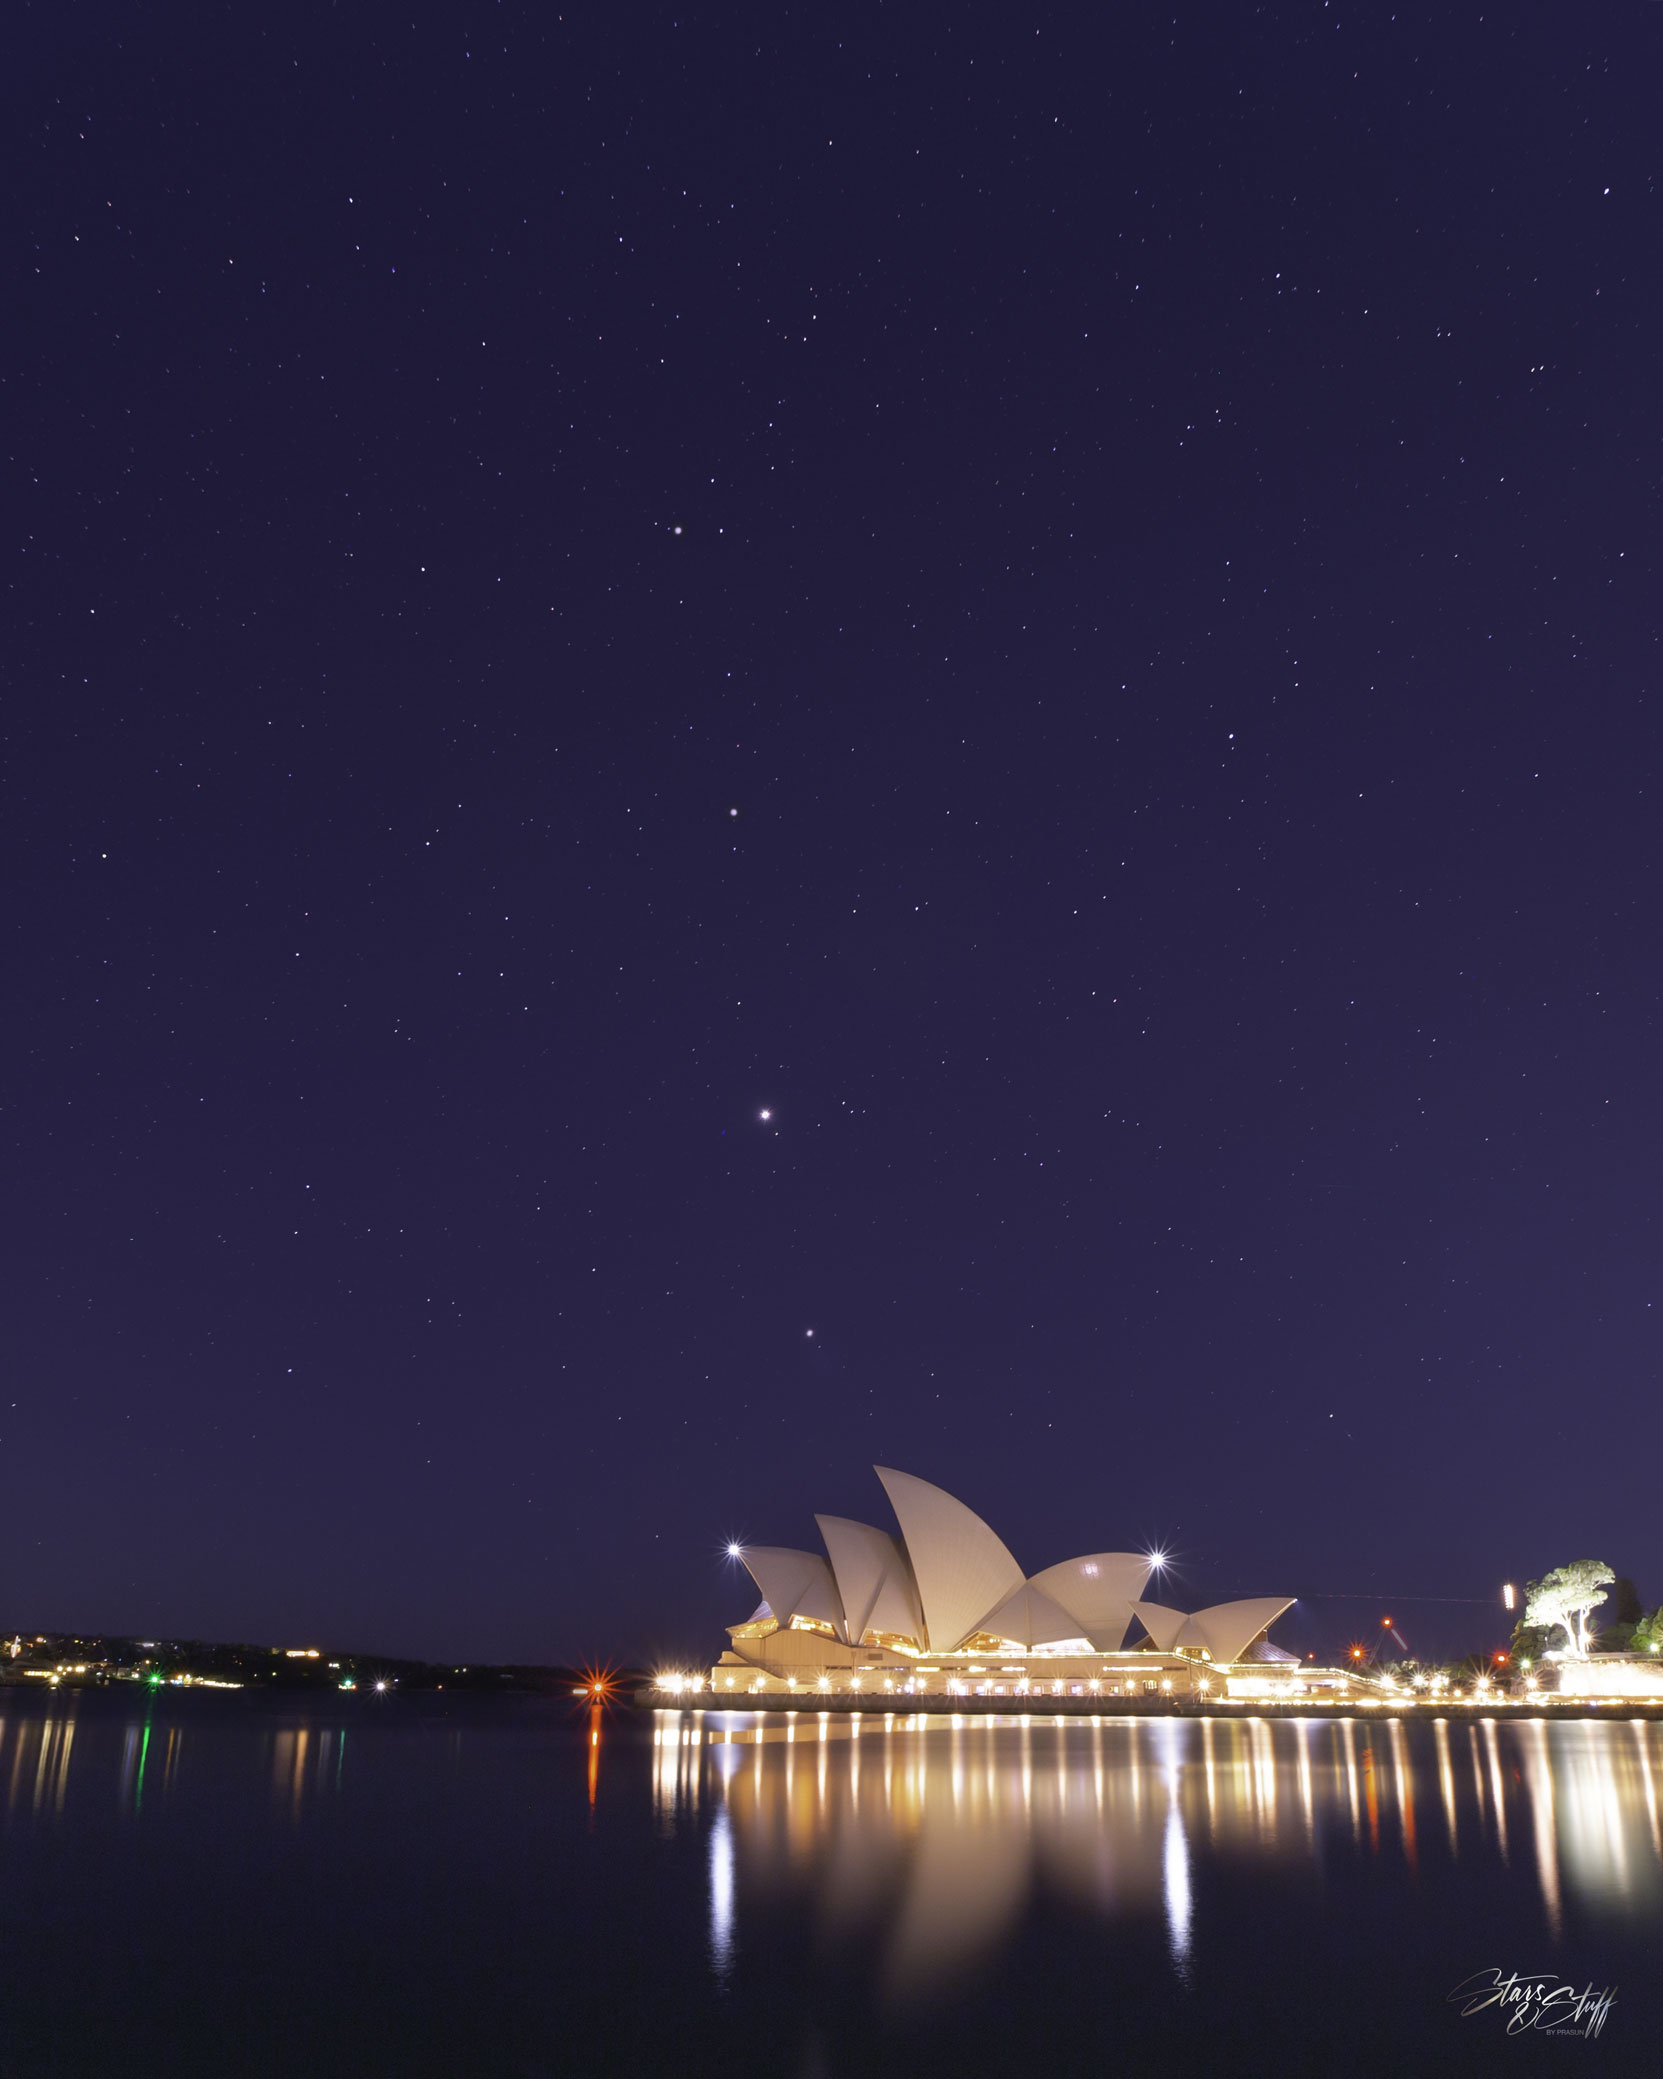 这张特色图片显示了四颗行星在澳大利亚悉尼歌剧院后面排成一行。这张照片是五天前日出前拍摄的。请参阅说明以获取更多详细信息。